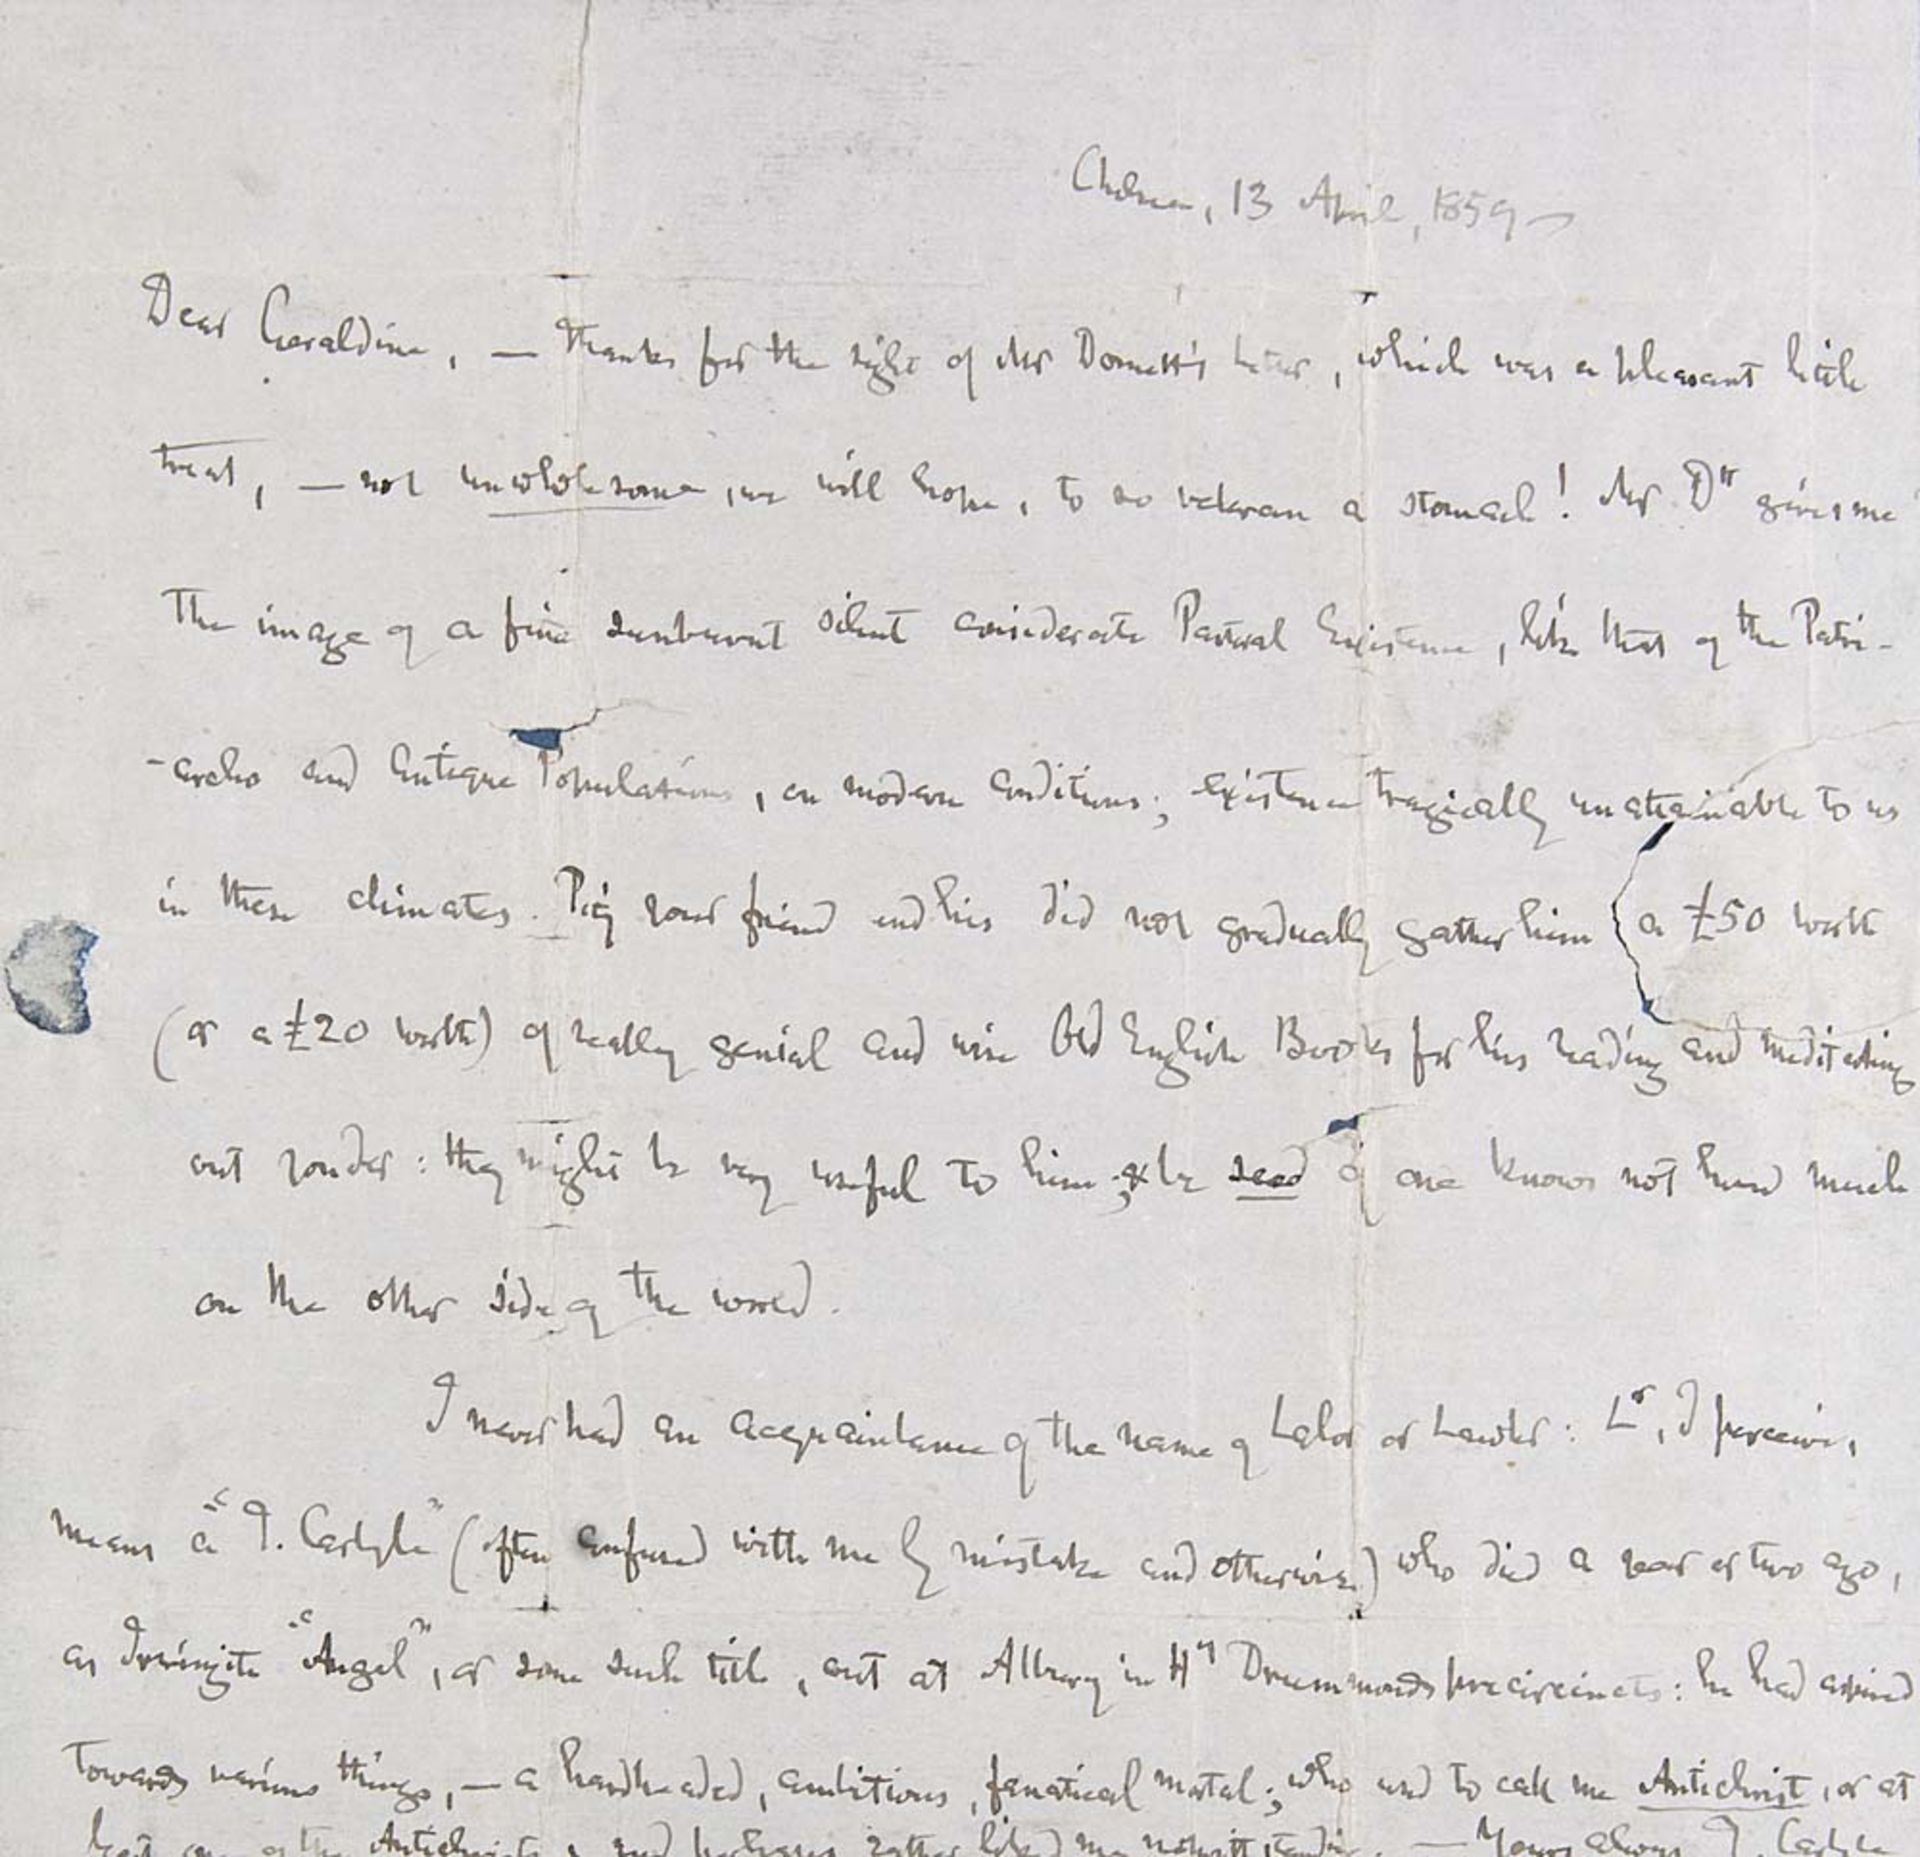 Eigenhändiger Brief von Thomas Carlyle an Miss Geraldine Jewsbury. Signiert und datiert Chelsea, 13.